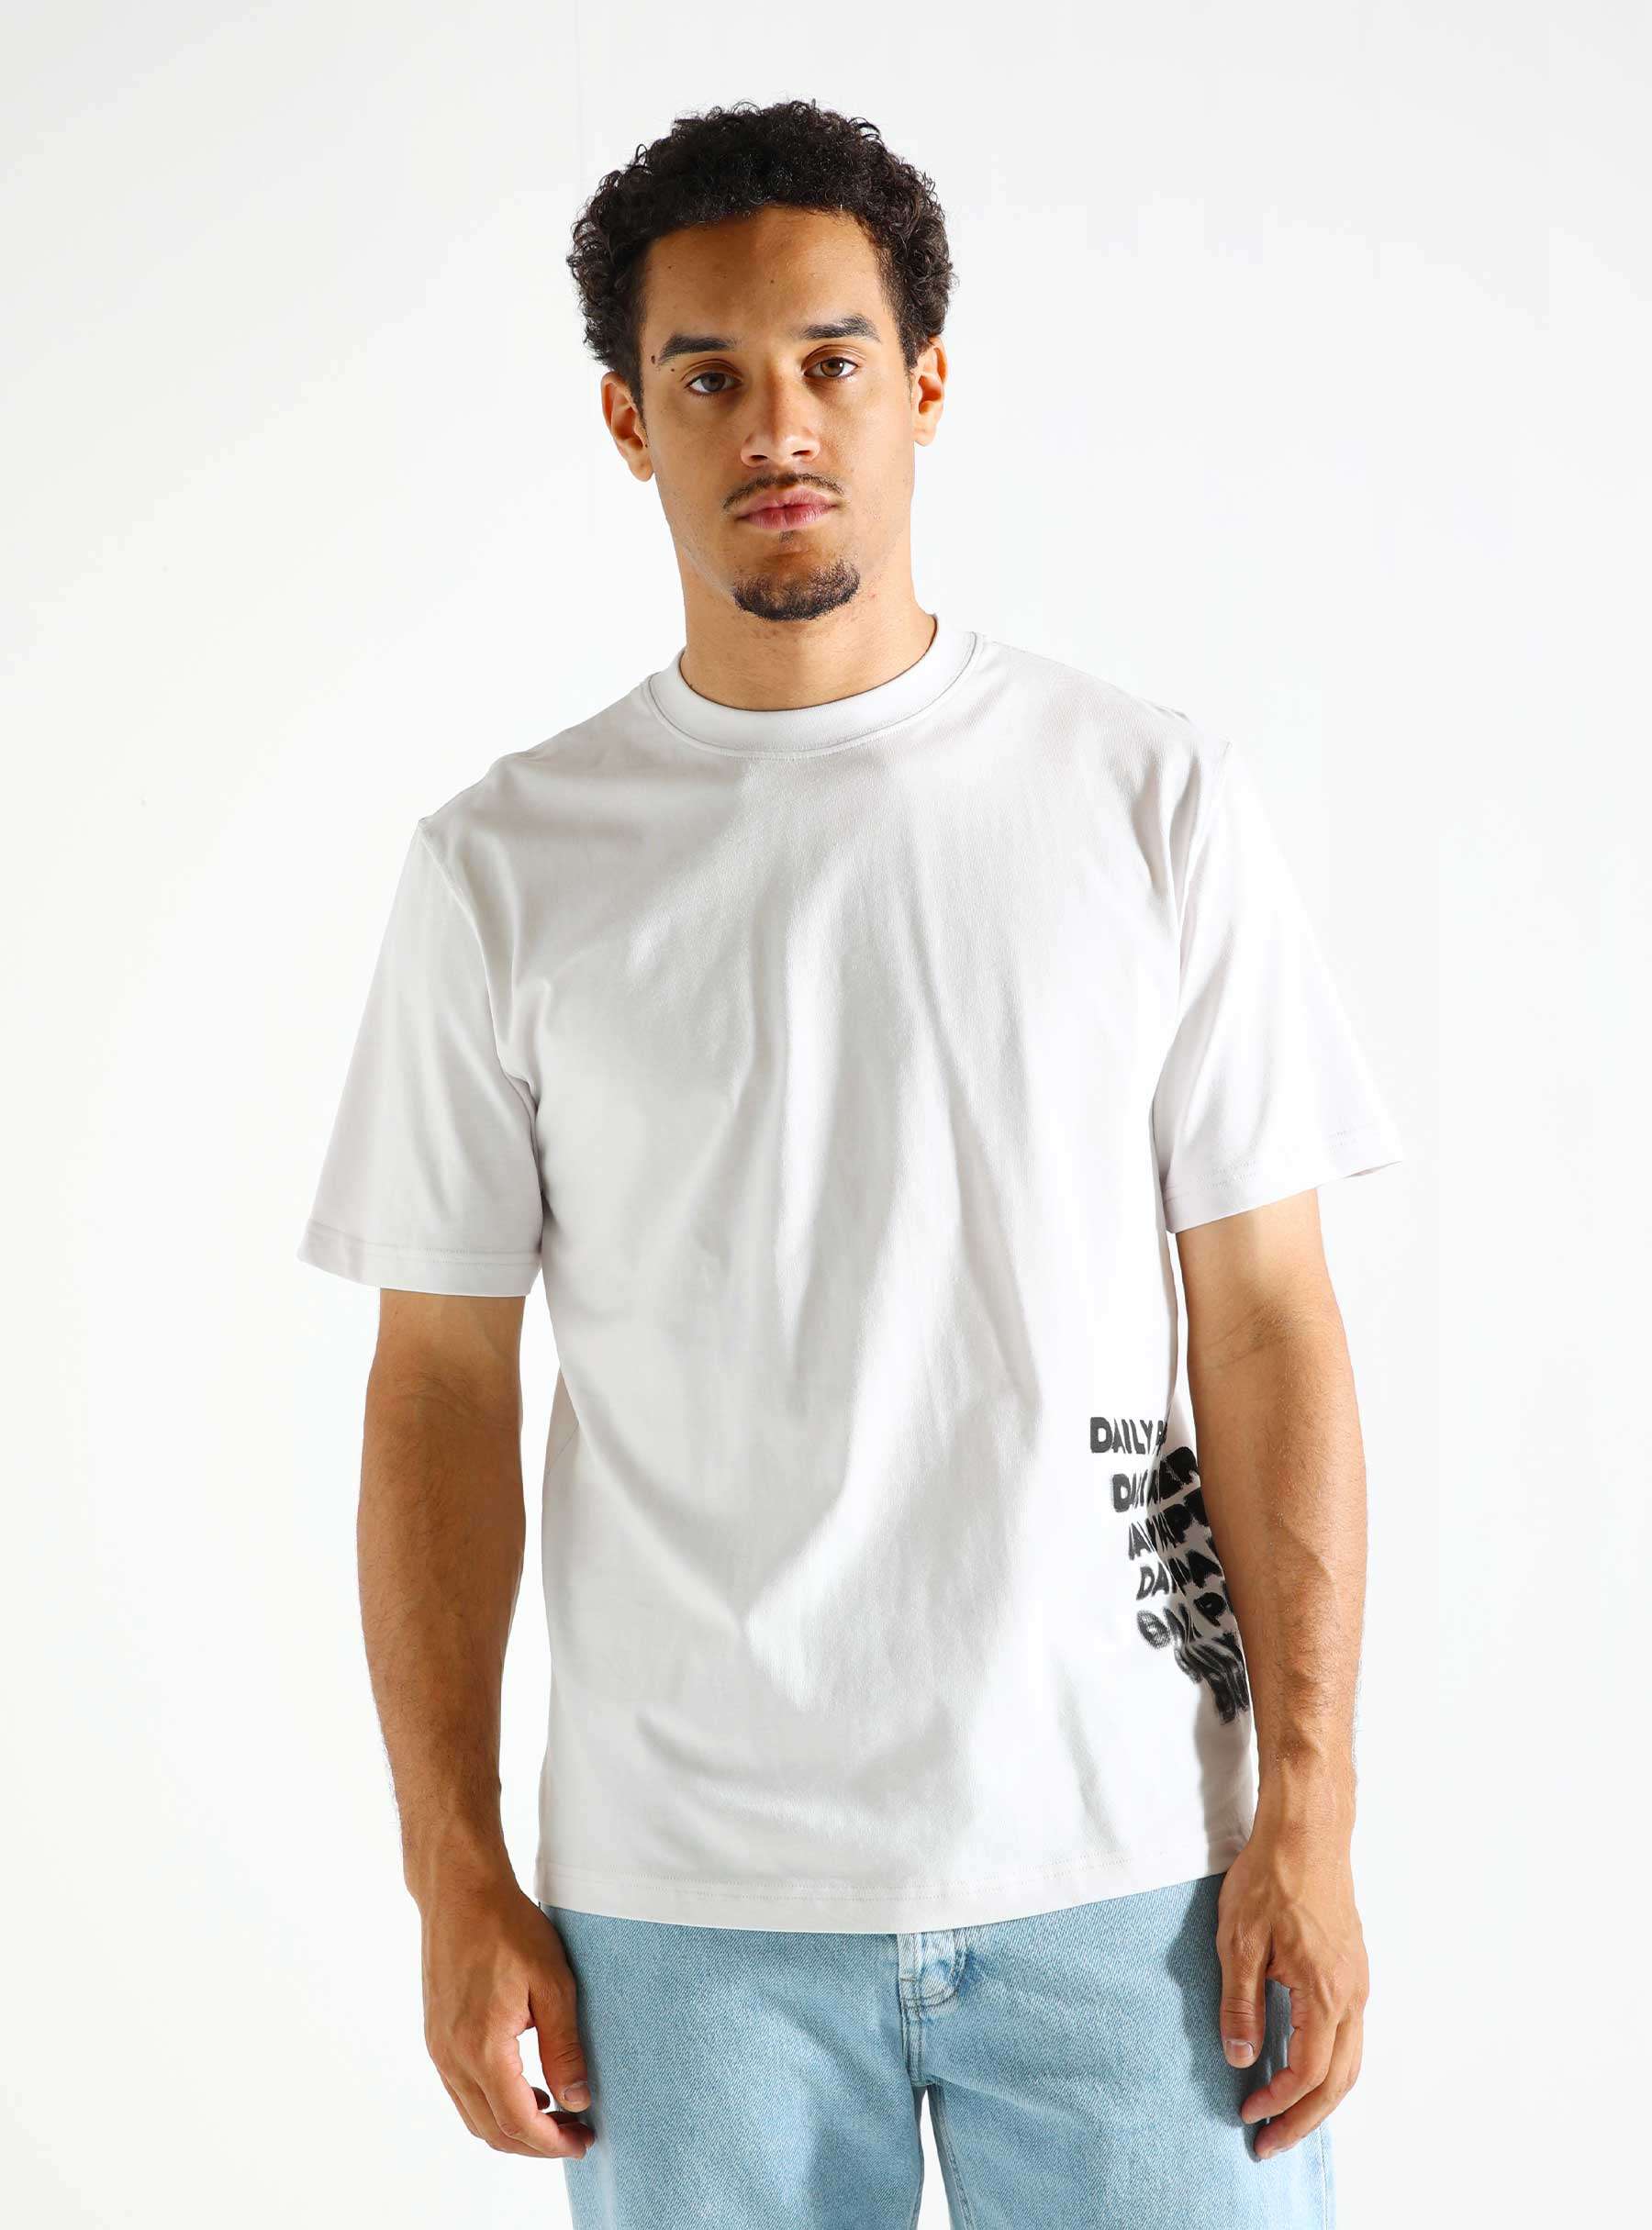 Overload T-Shirt Nimbus Grey 2421080